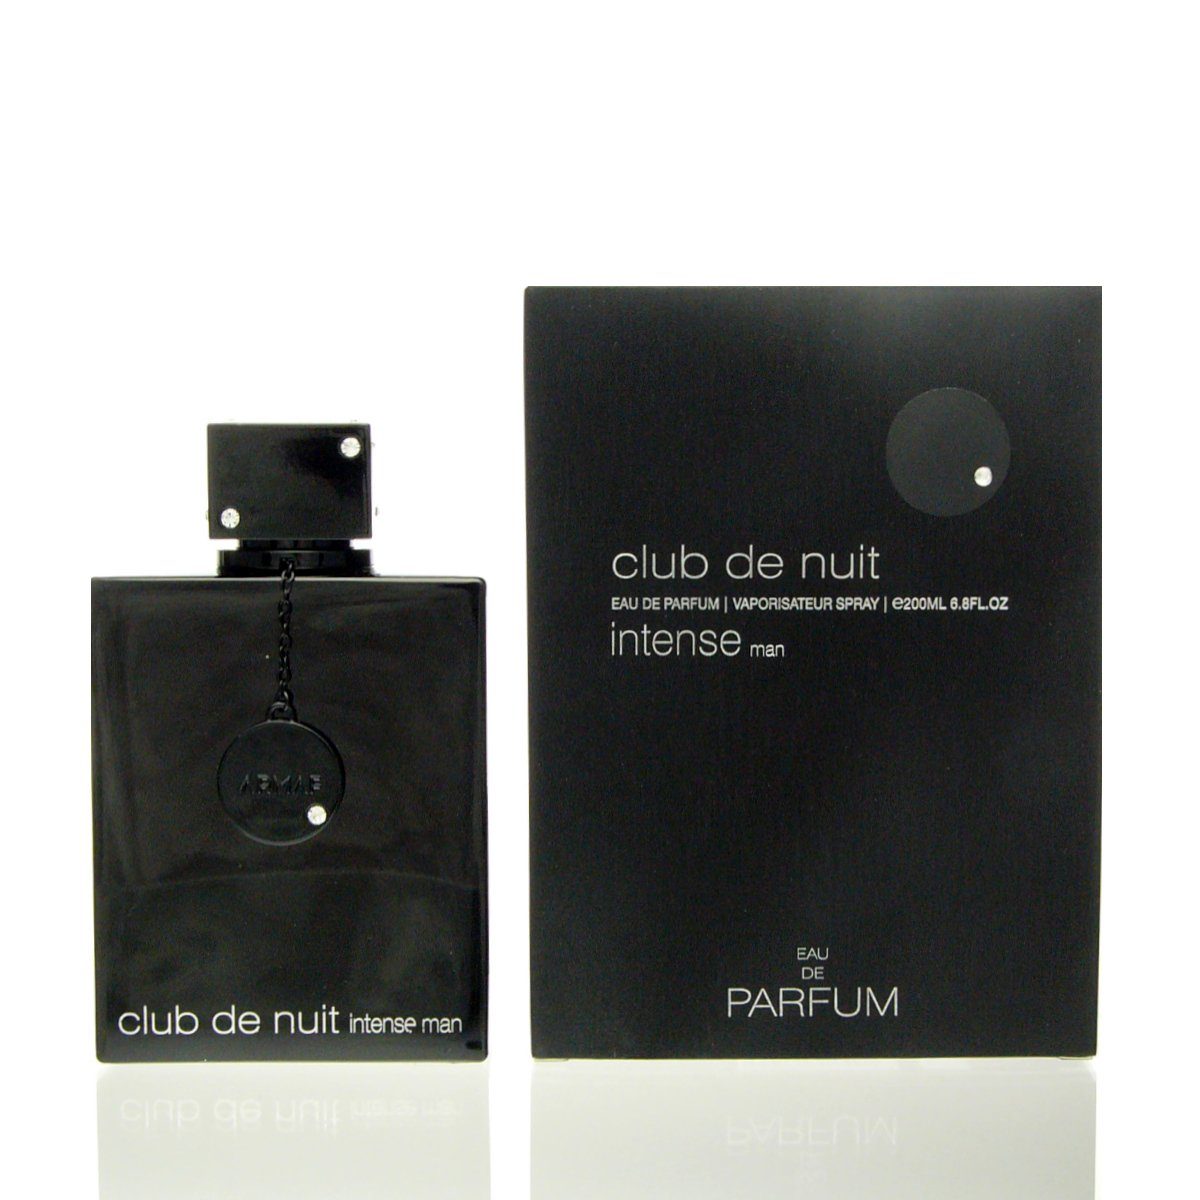 Parfum Eau Club 200 Armaf Eau Nuit de armaf Intense Parfum de de ml Man